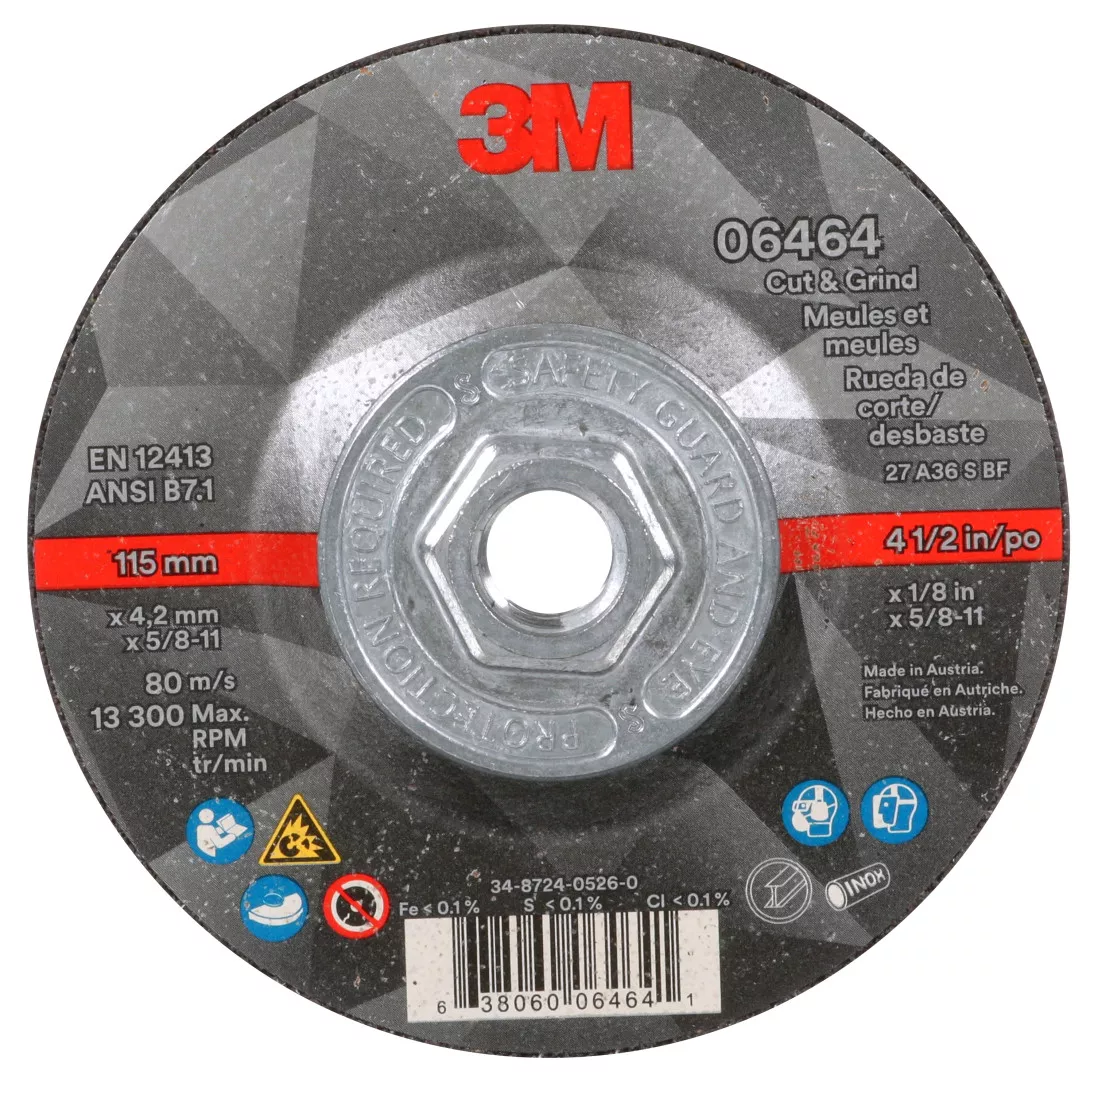 3M™ Cut & Grind Wheel, 06464, Type 27, 4-1/2 in x 1/8 in x 5/8